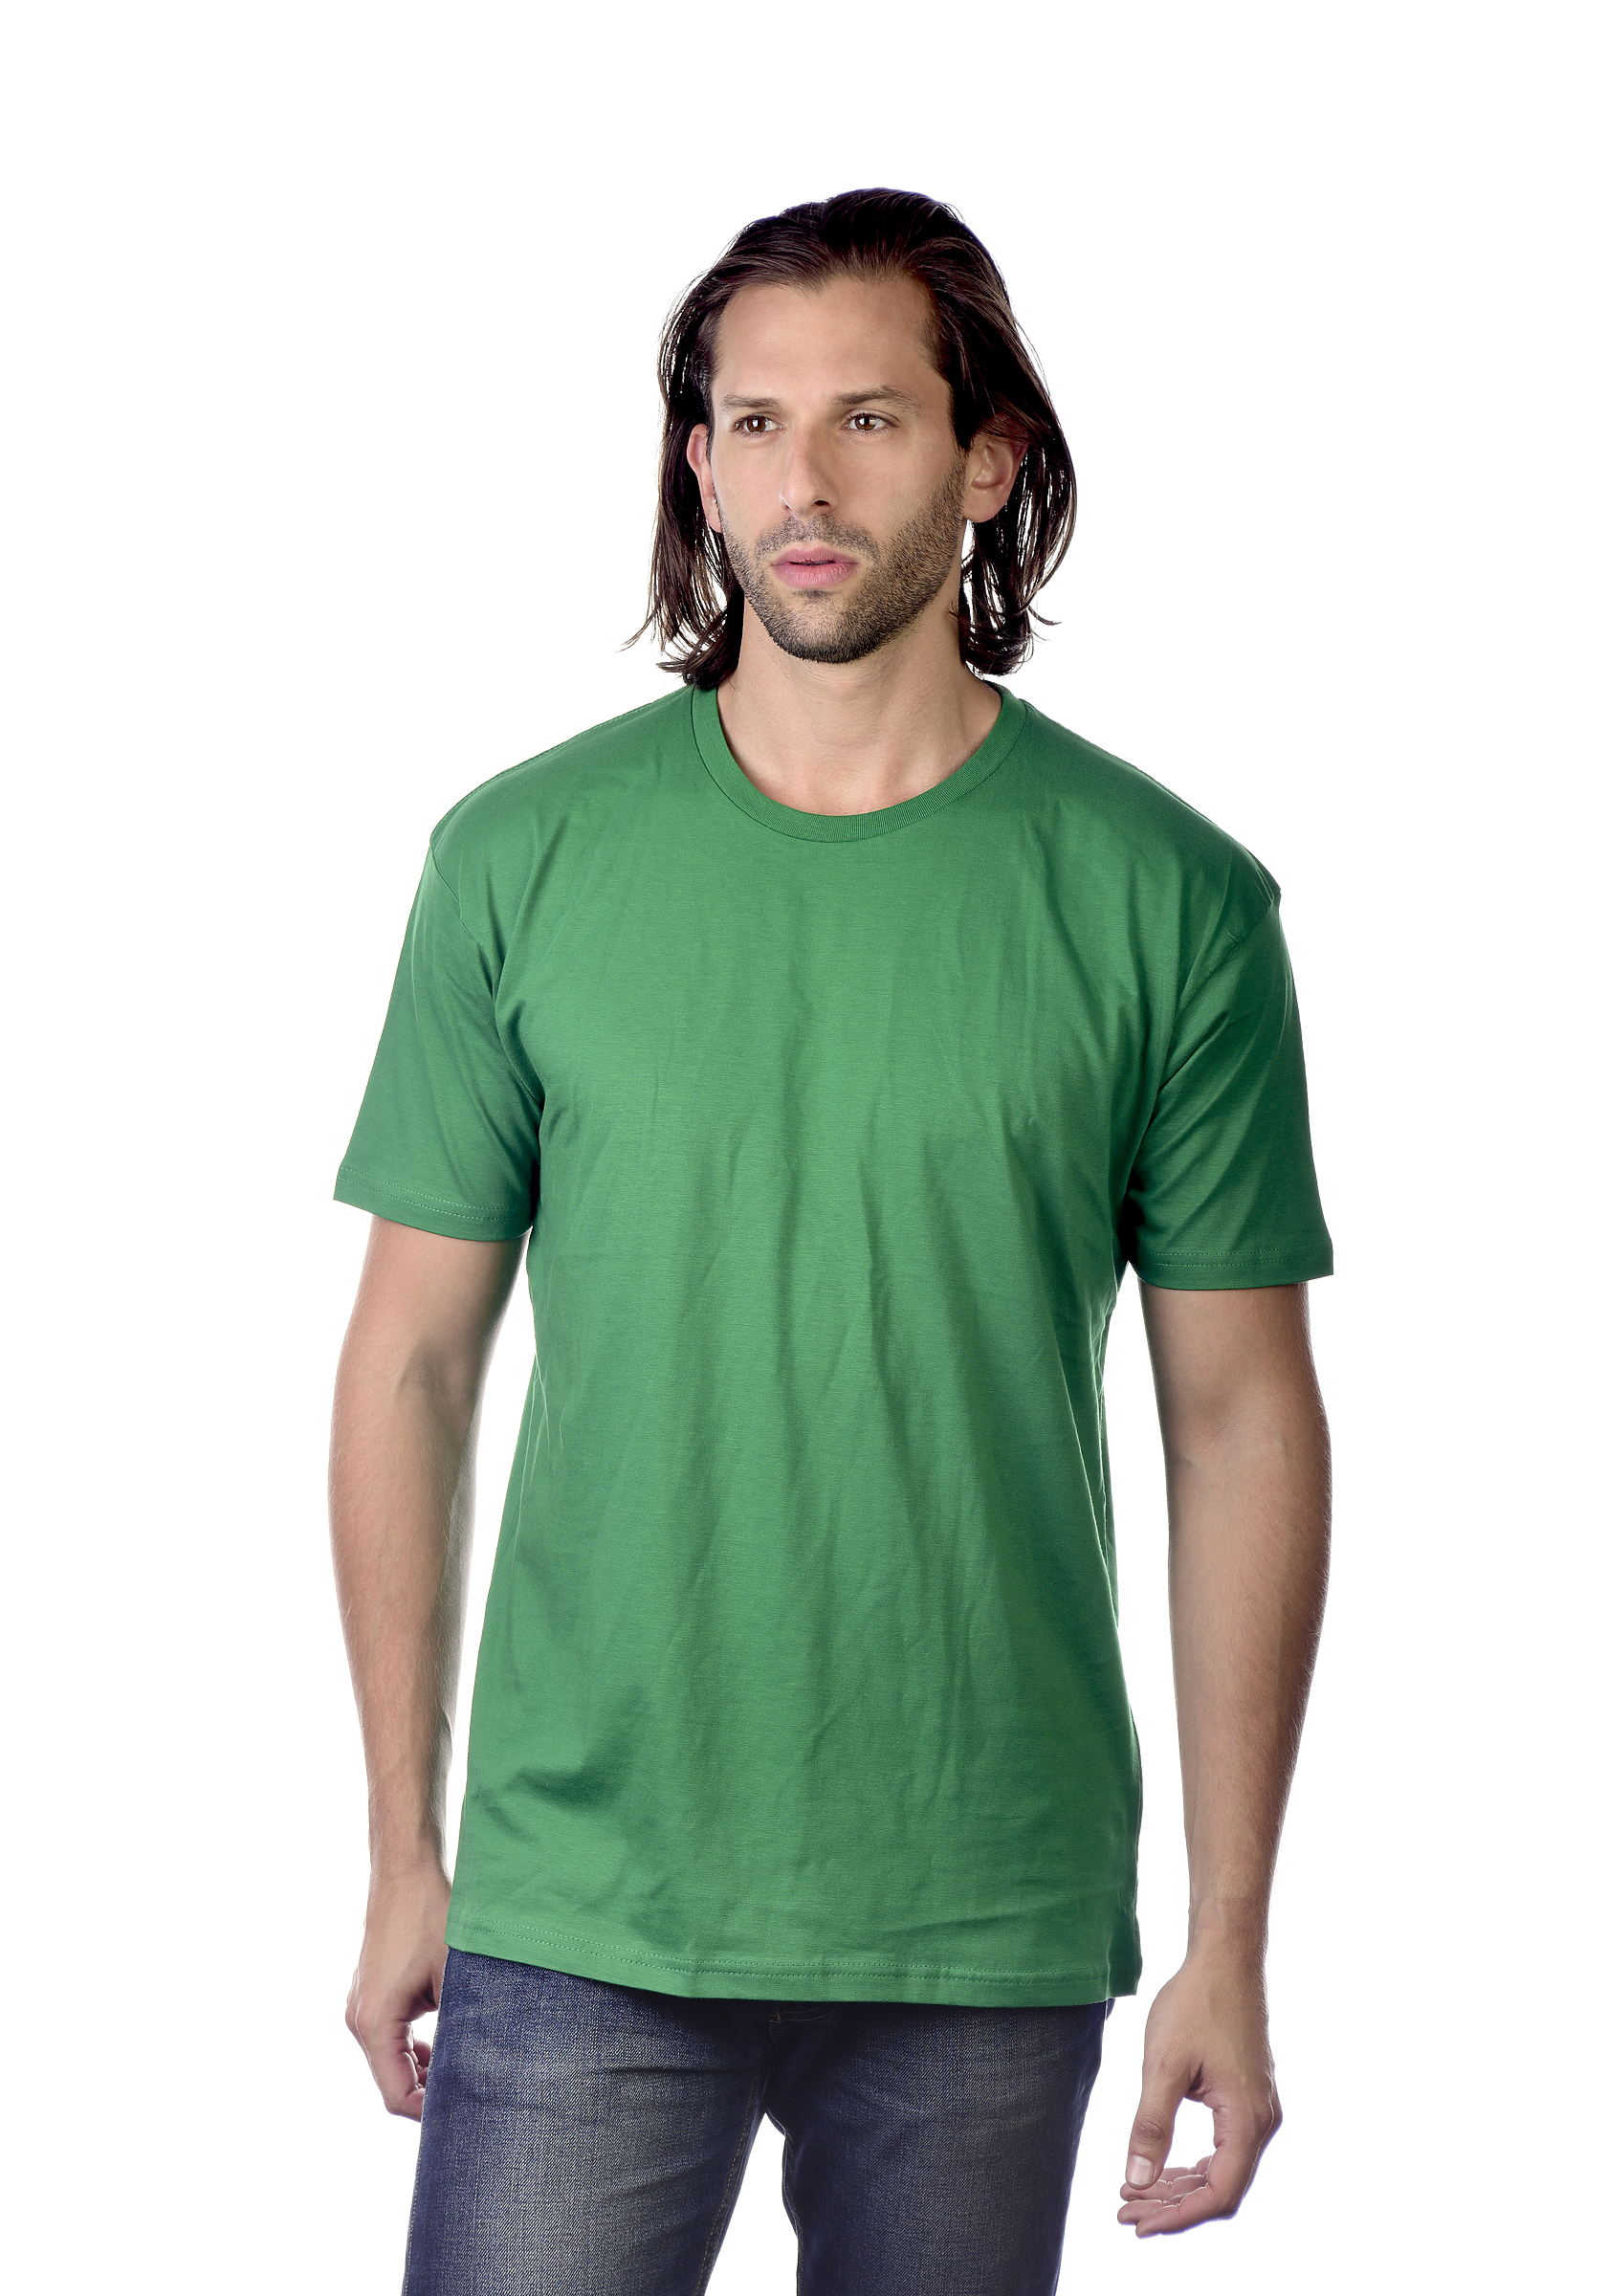 Unisex Short Sleeve T-Shirt | Cotton Heritage